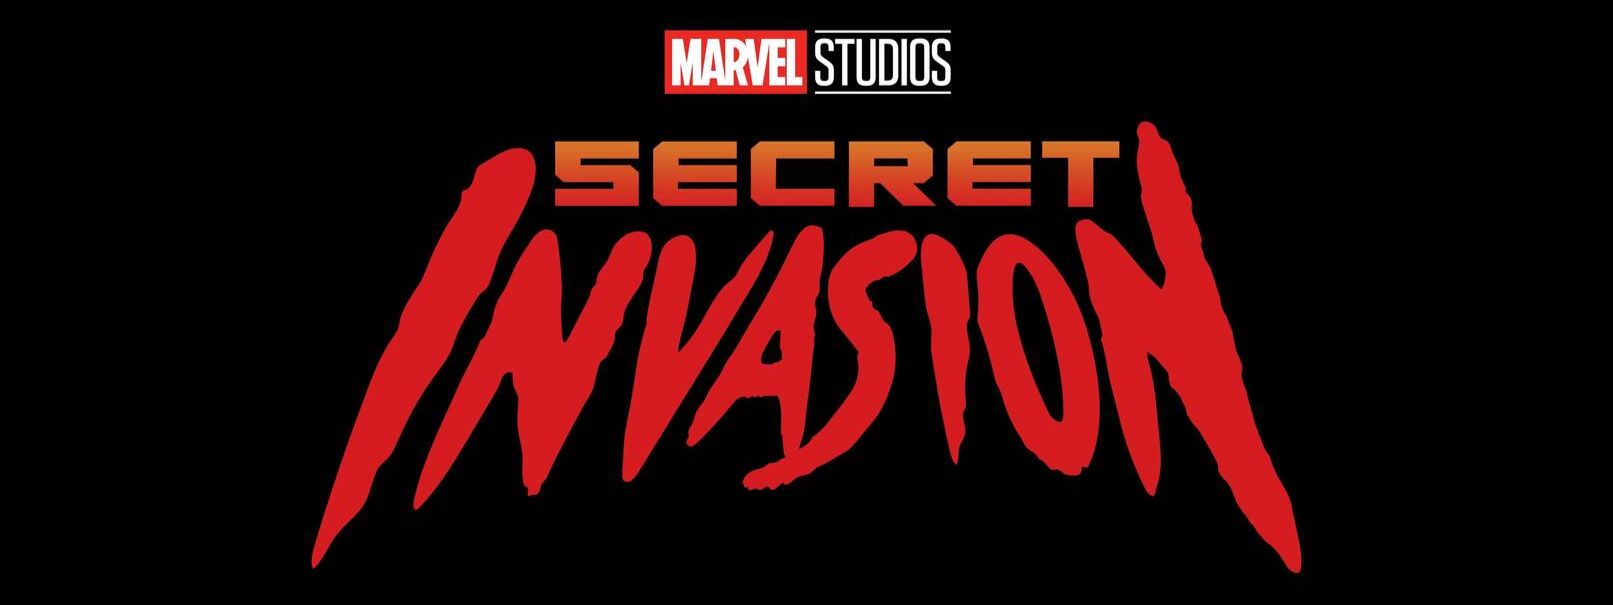 Secret Invasion Disney+ Series